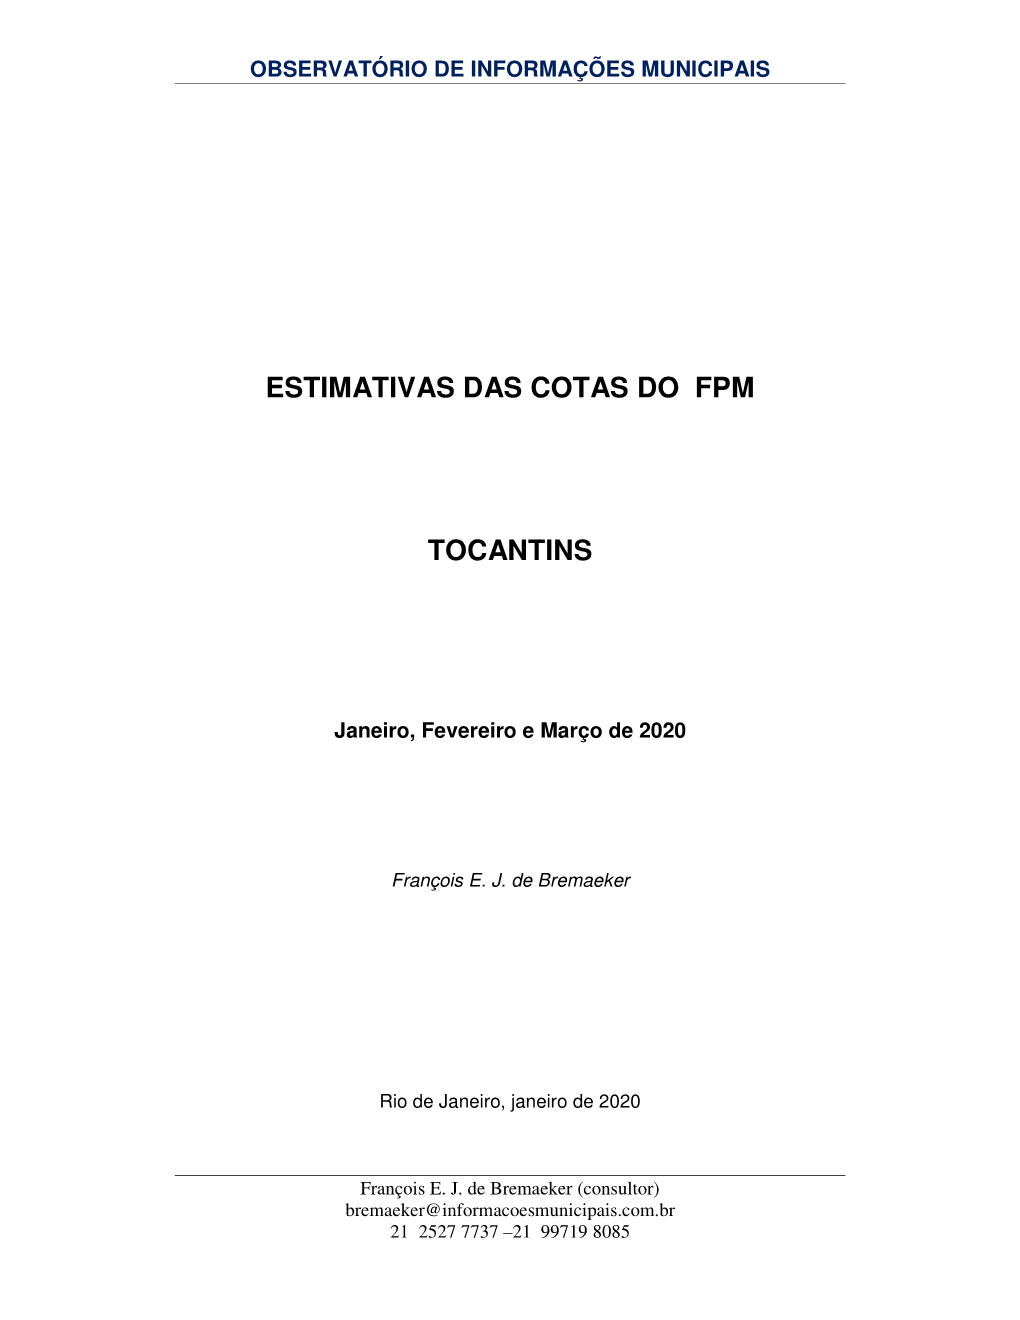 Estimativas Das Cotas Do Fpm Tocantins